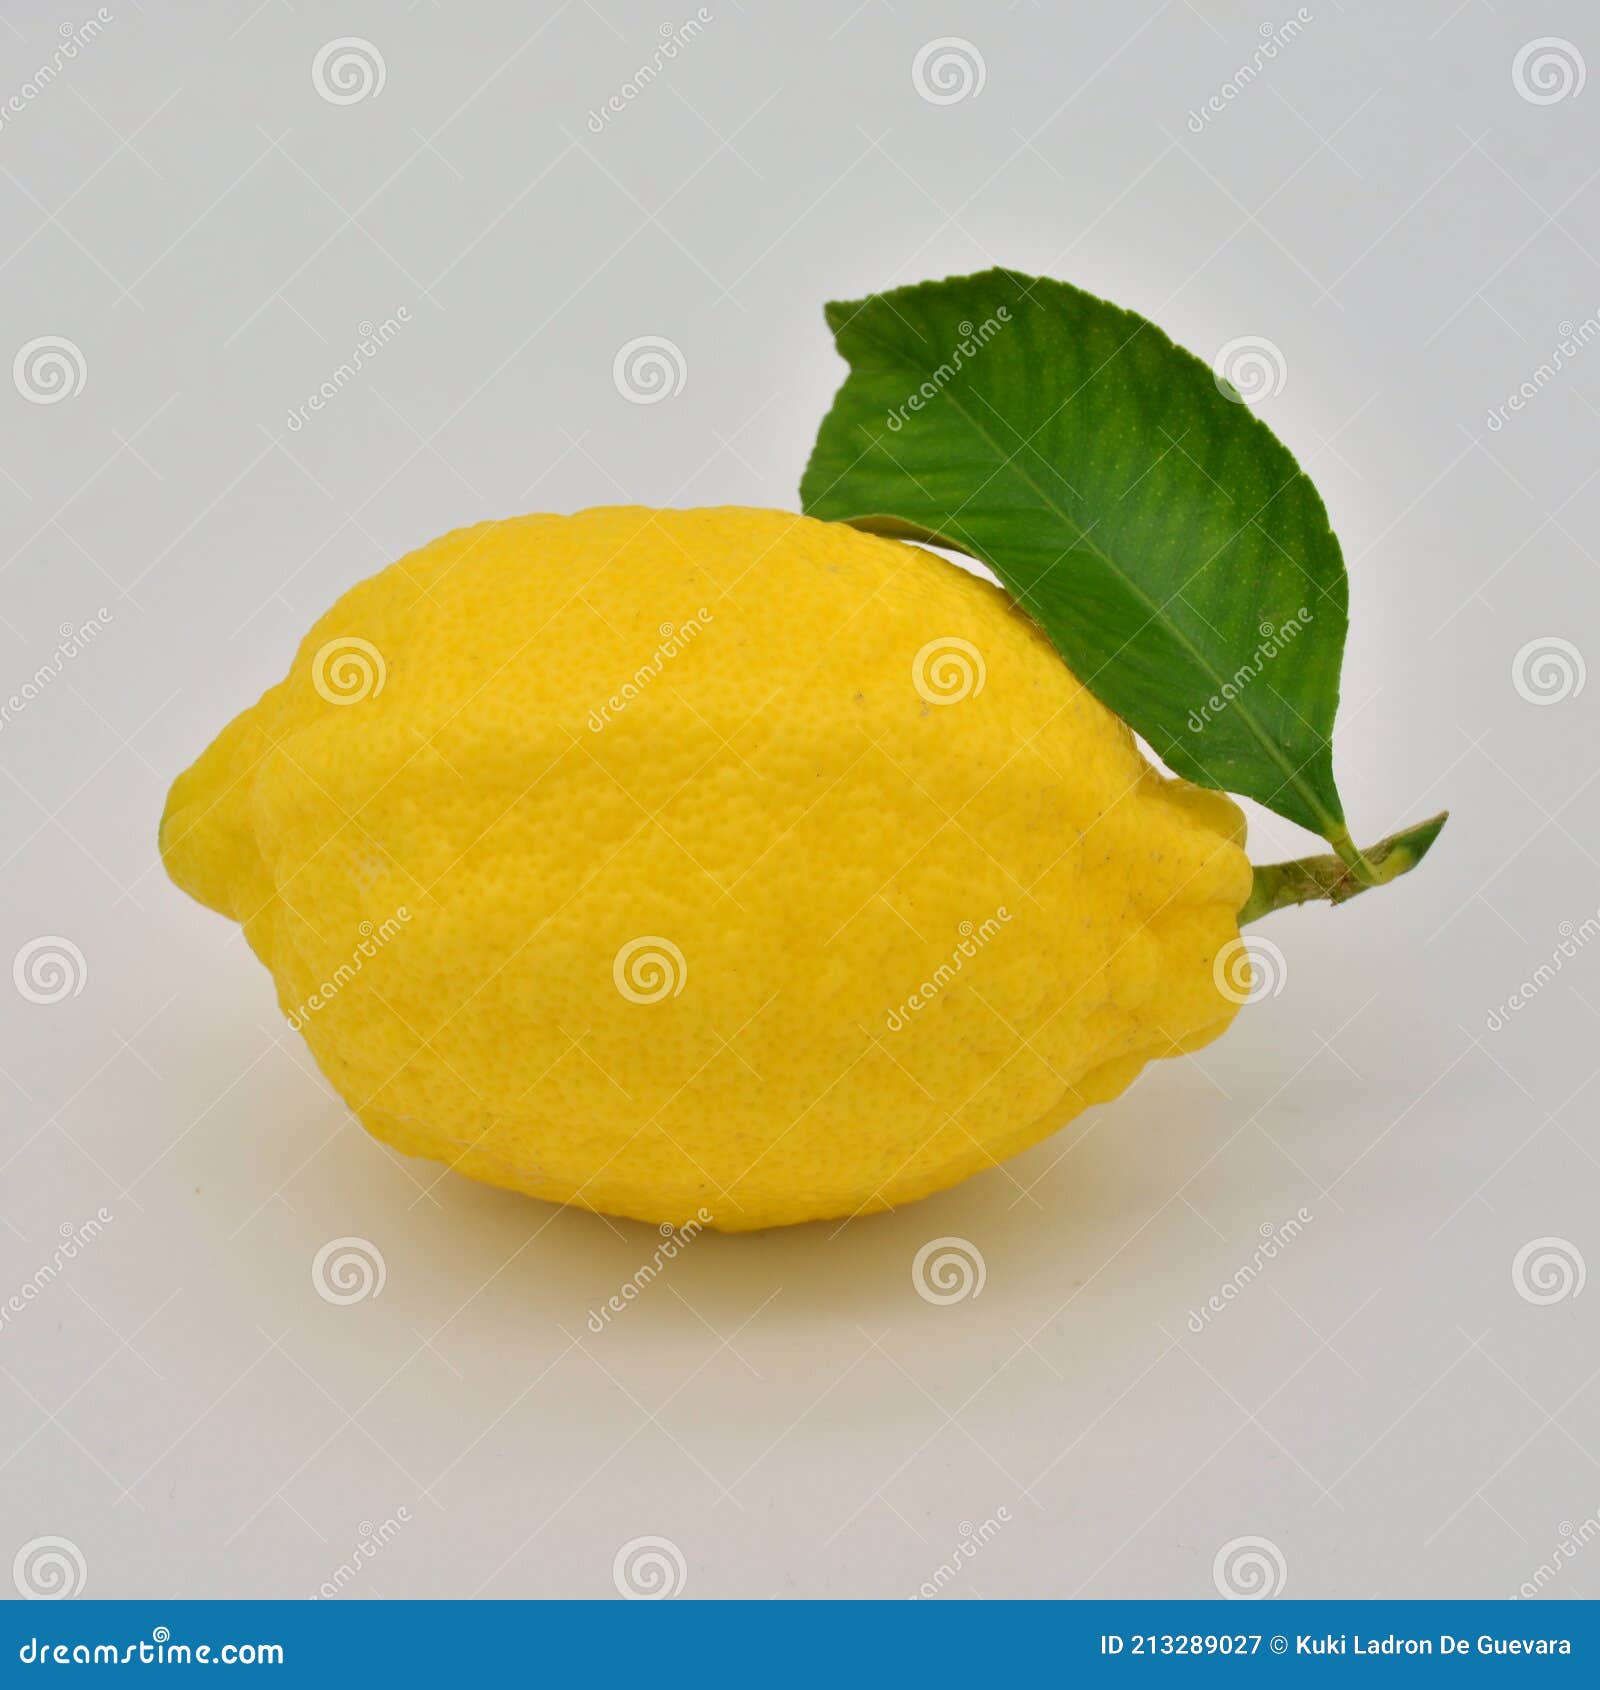 fresh cut lemon